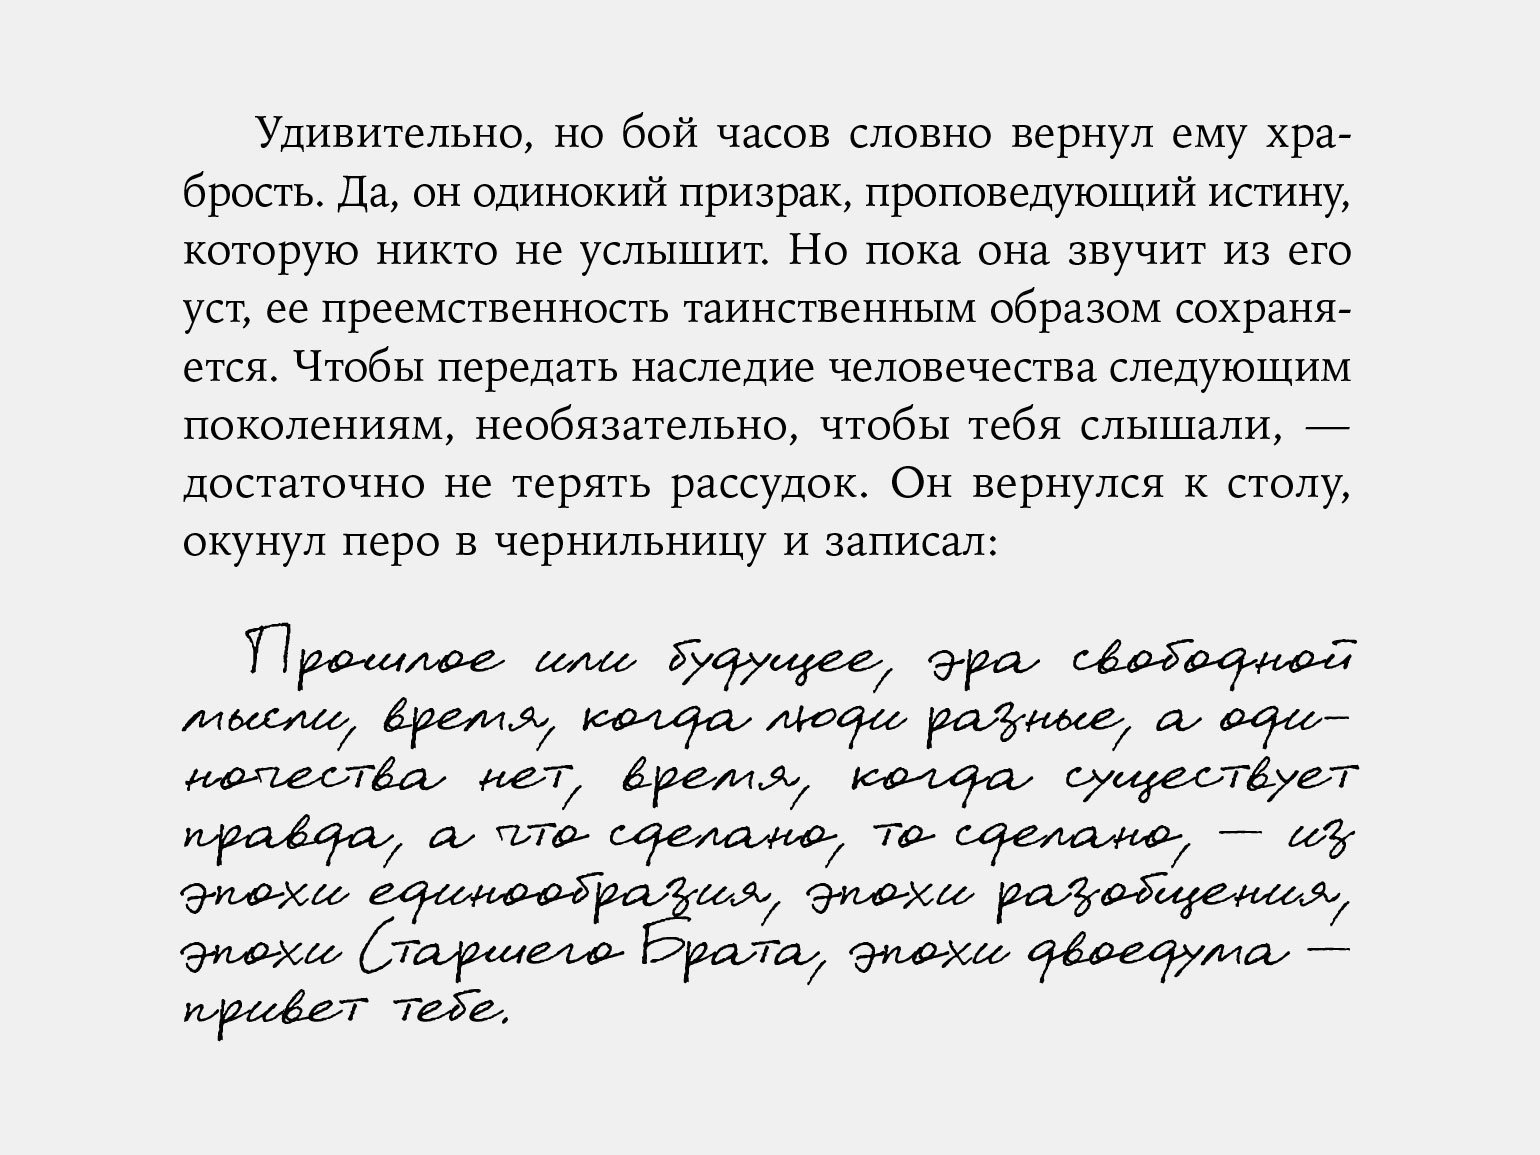 Сочетание шрифтов в новом издании «1984» Джорджа Оруэлла в переводе Леонида Бершидского